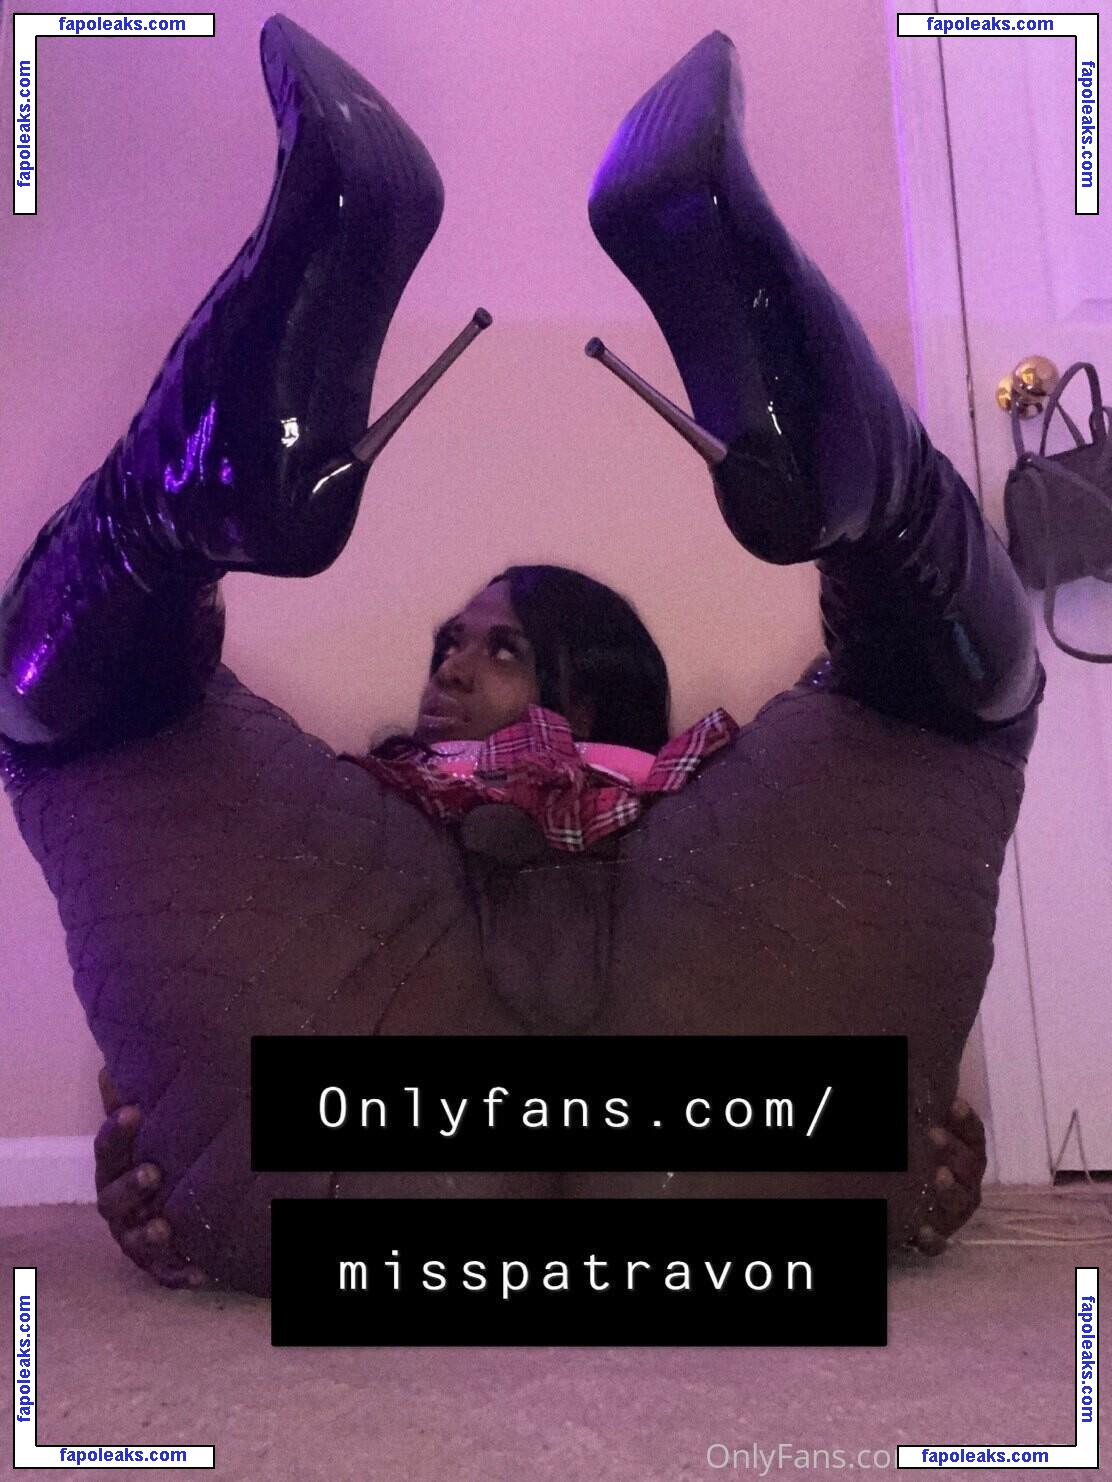 Patravon Tesse / MISSPATRAVON nude photo #0007 from OnlyFans